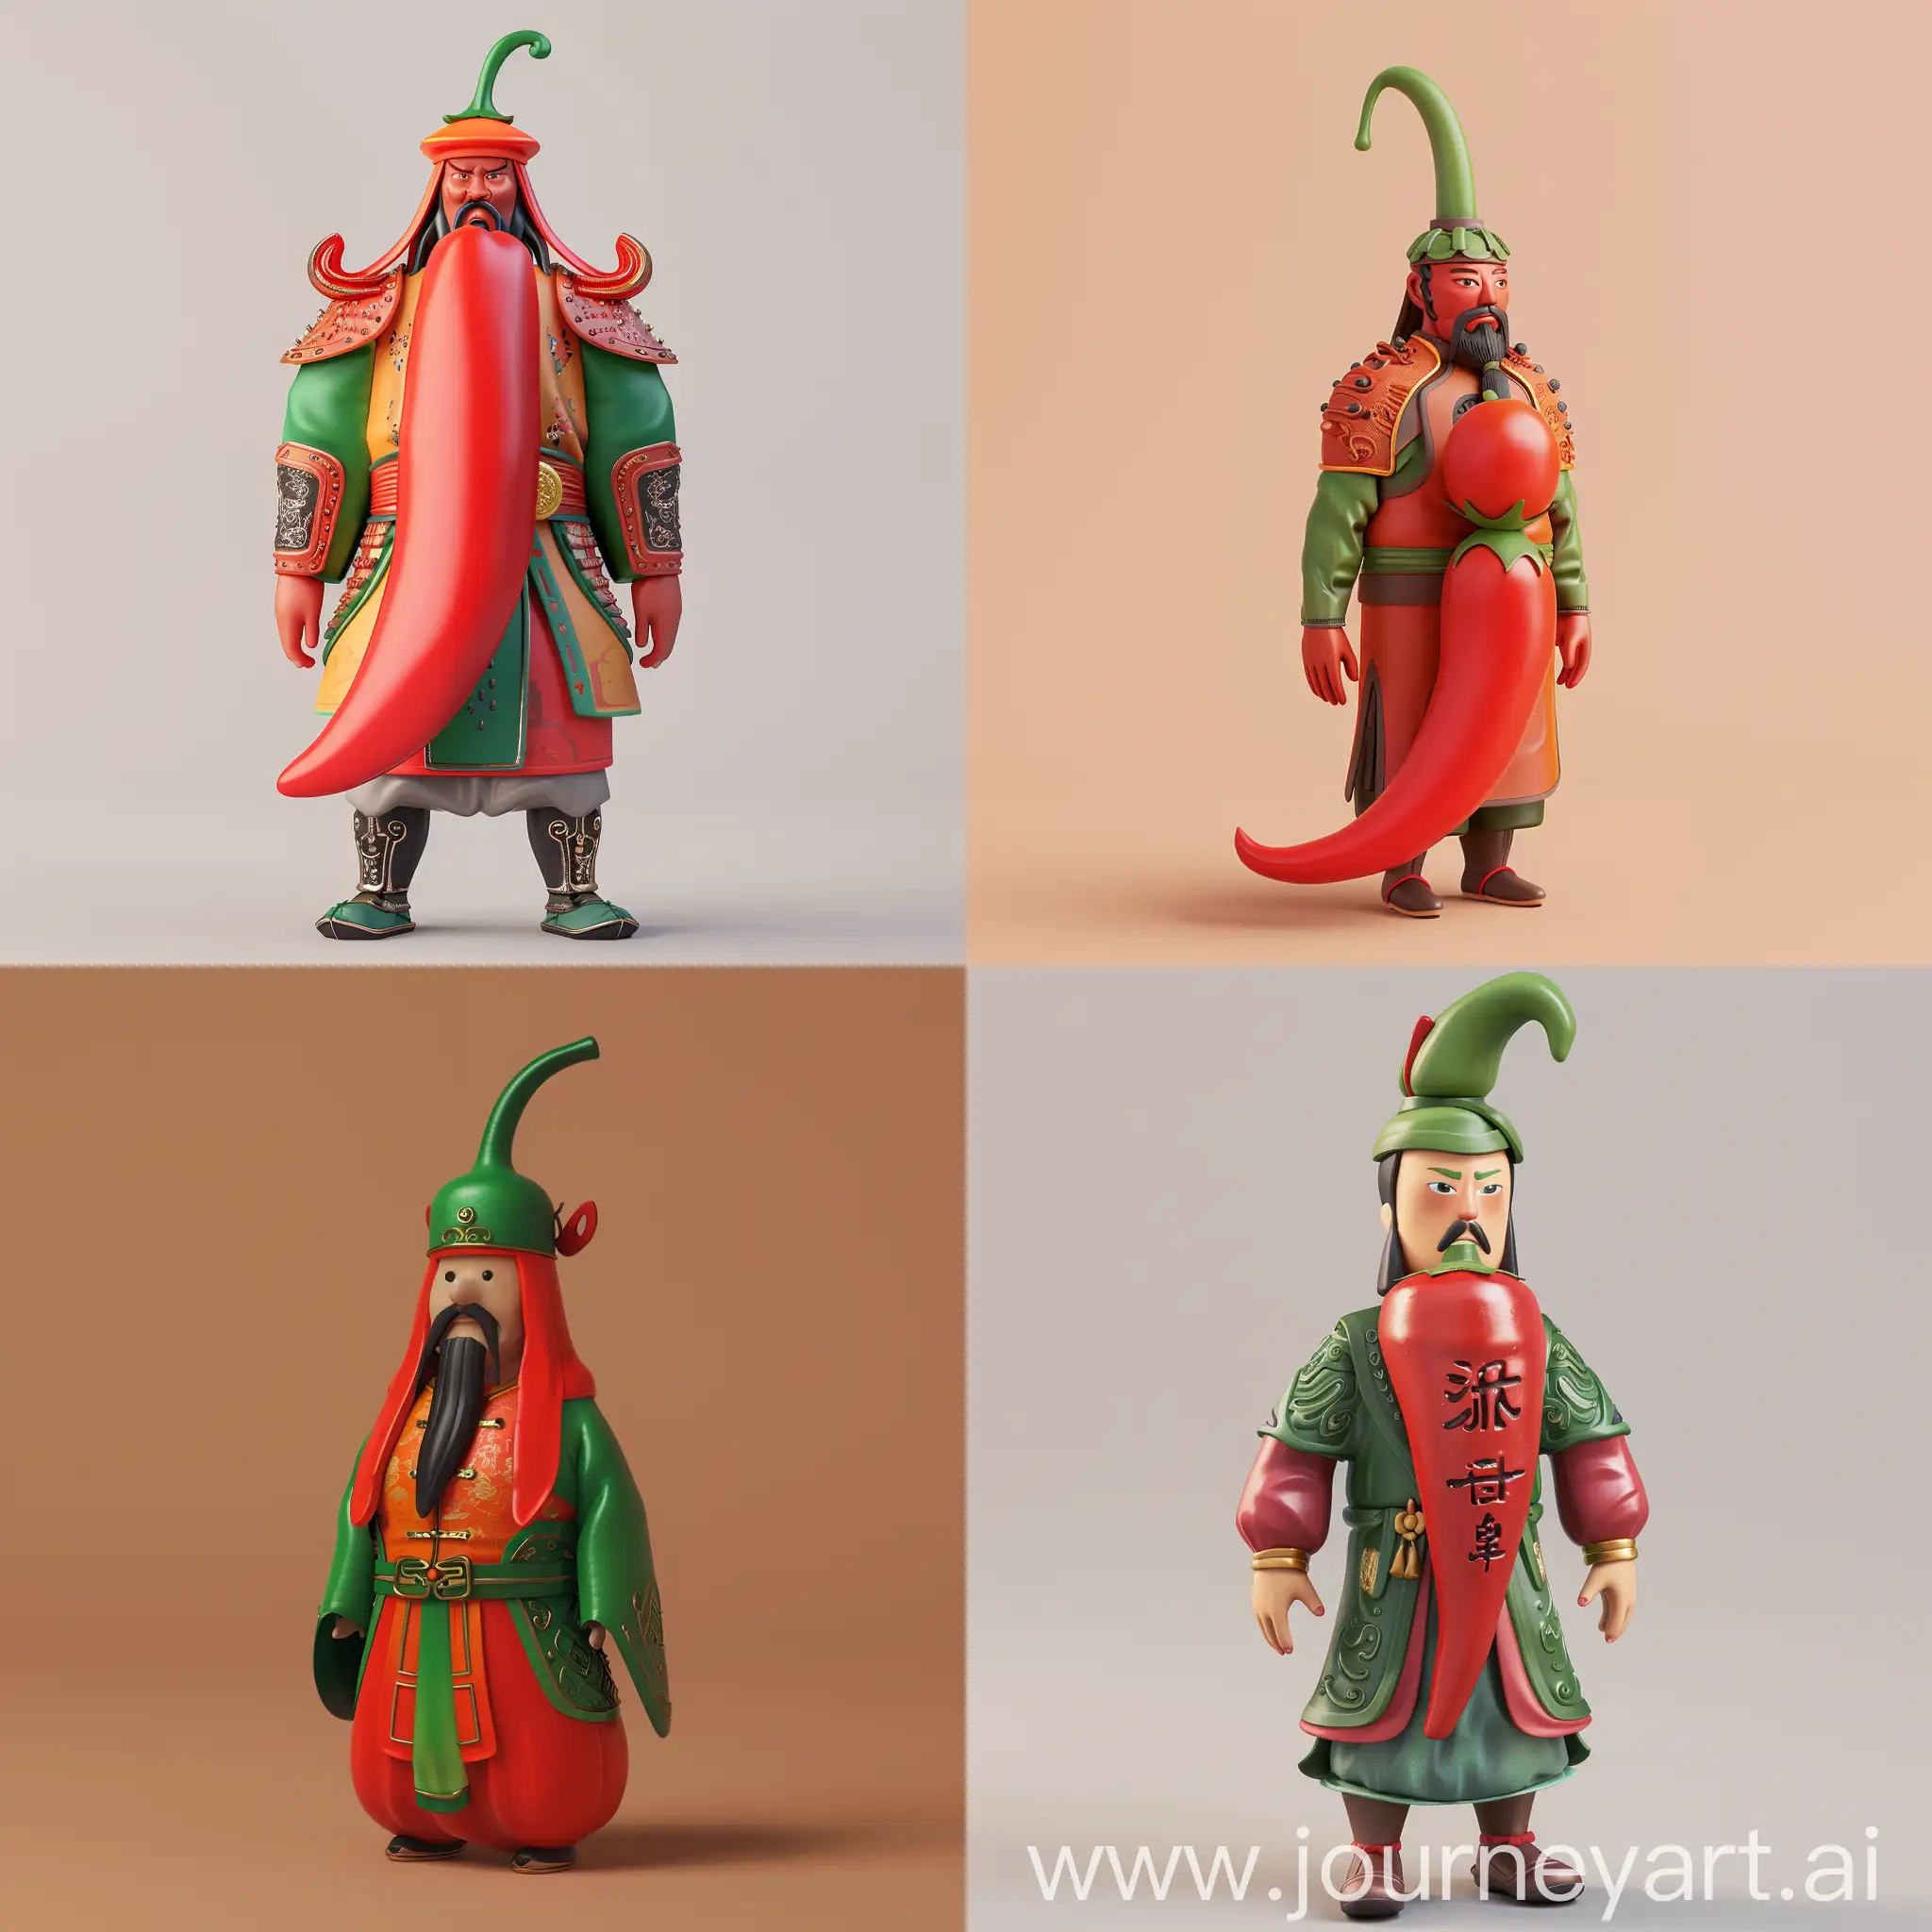 帮我设计一款文创产品，创意为给一个辣椒穿上东汉时期的将军服装。一个人偶玩具。3D图